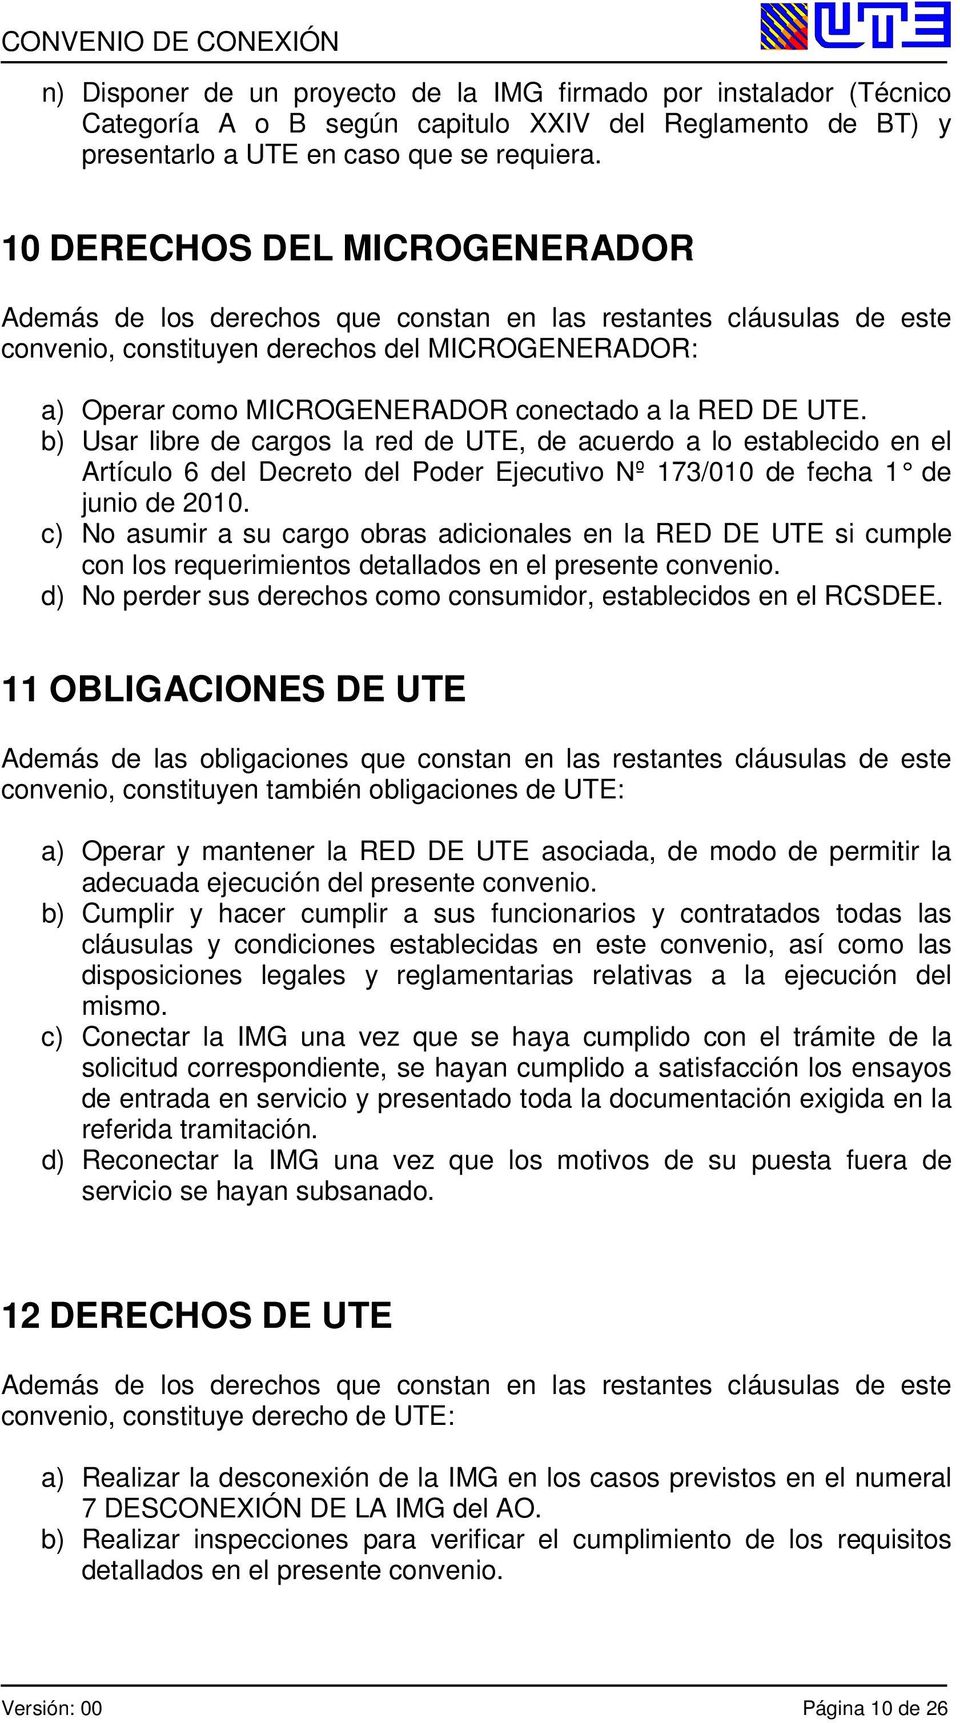 RED DE UTE. b) Usar libre de cargos la red de UTE, de acuerdo a lo establecido en el Artículo 6 del Decreto del Poder Ejecutivo Nº 173/010 de fecha 1 de junio de 2010.